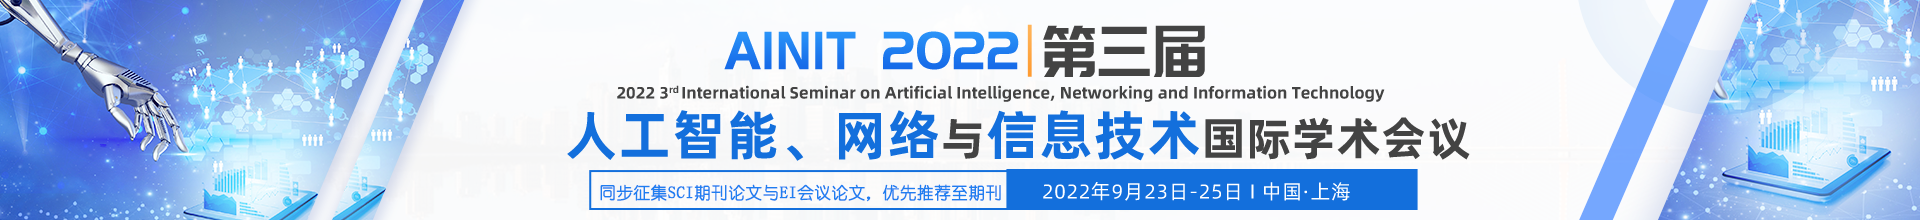 9月上海-AINIT 2022-学术会议云PC端（上线平台）-陈军-20220310(含期刊）.png